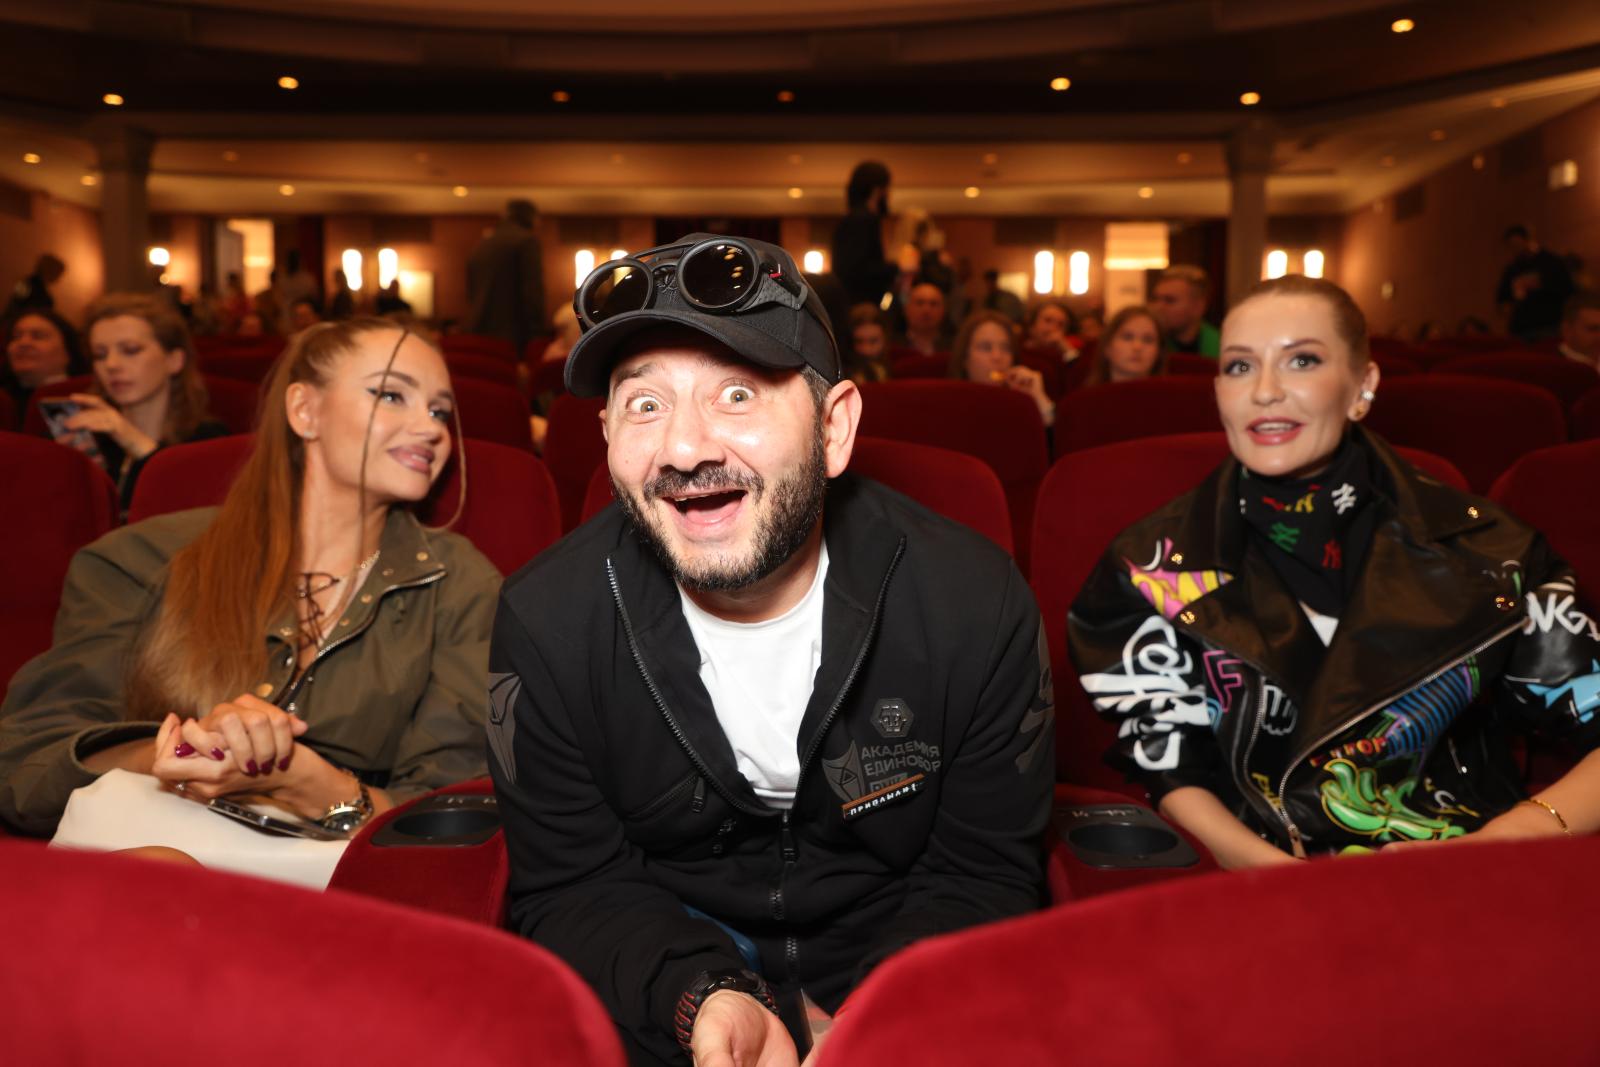 Галустян, Водонаева, Цыпкин, Самбурская и другие звезды посетили премьеру комедии «Приплыли!»